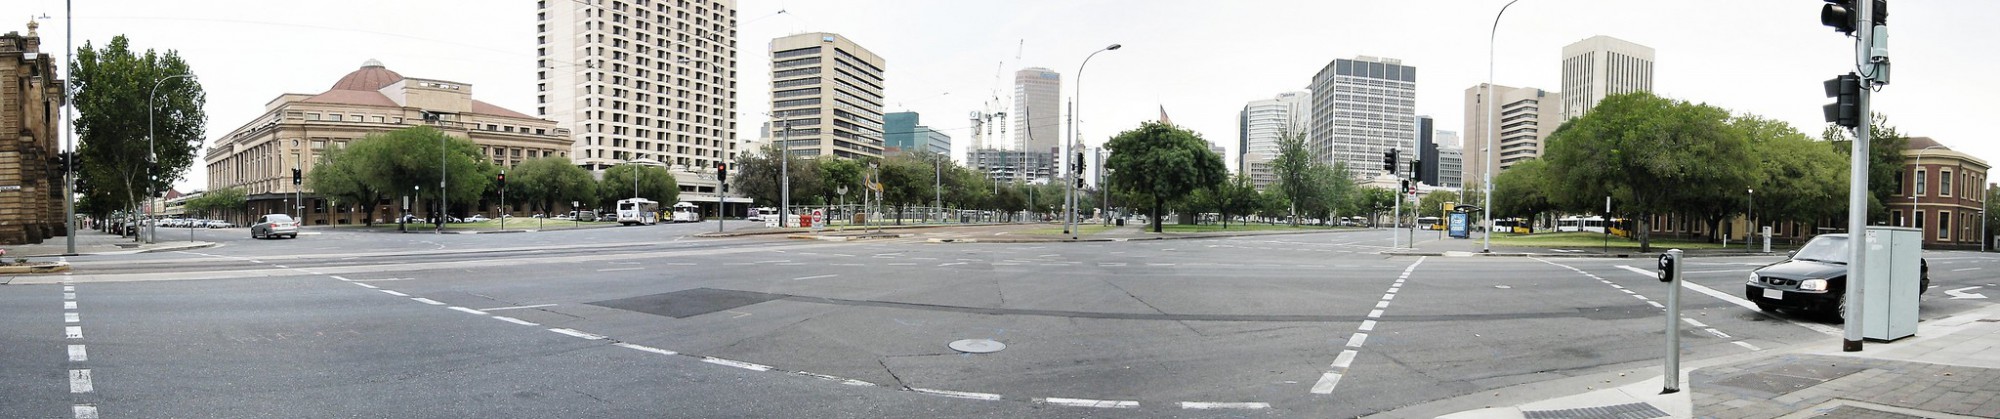 Victoria Square, Adelaide - circa 2006